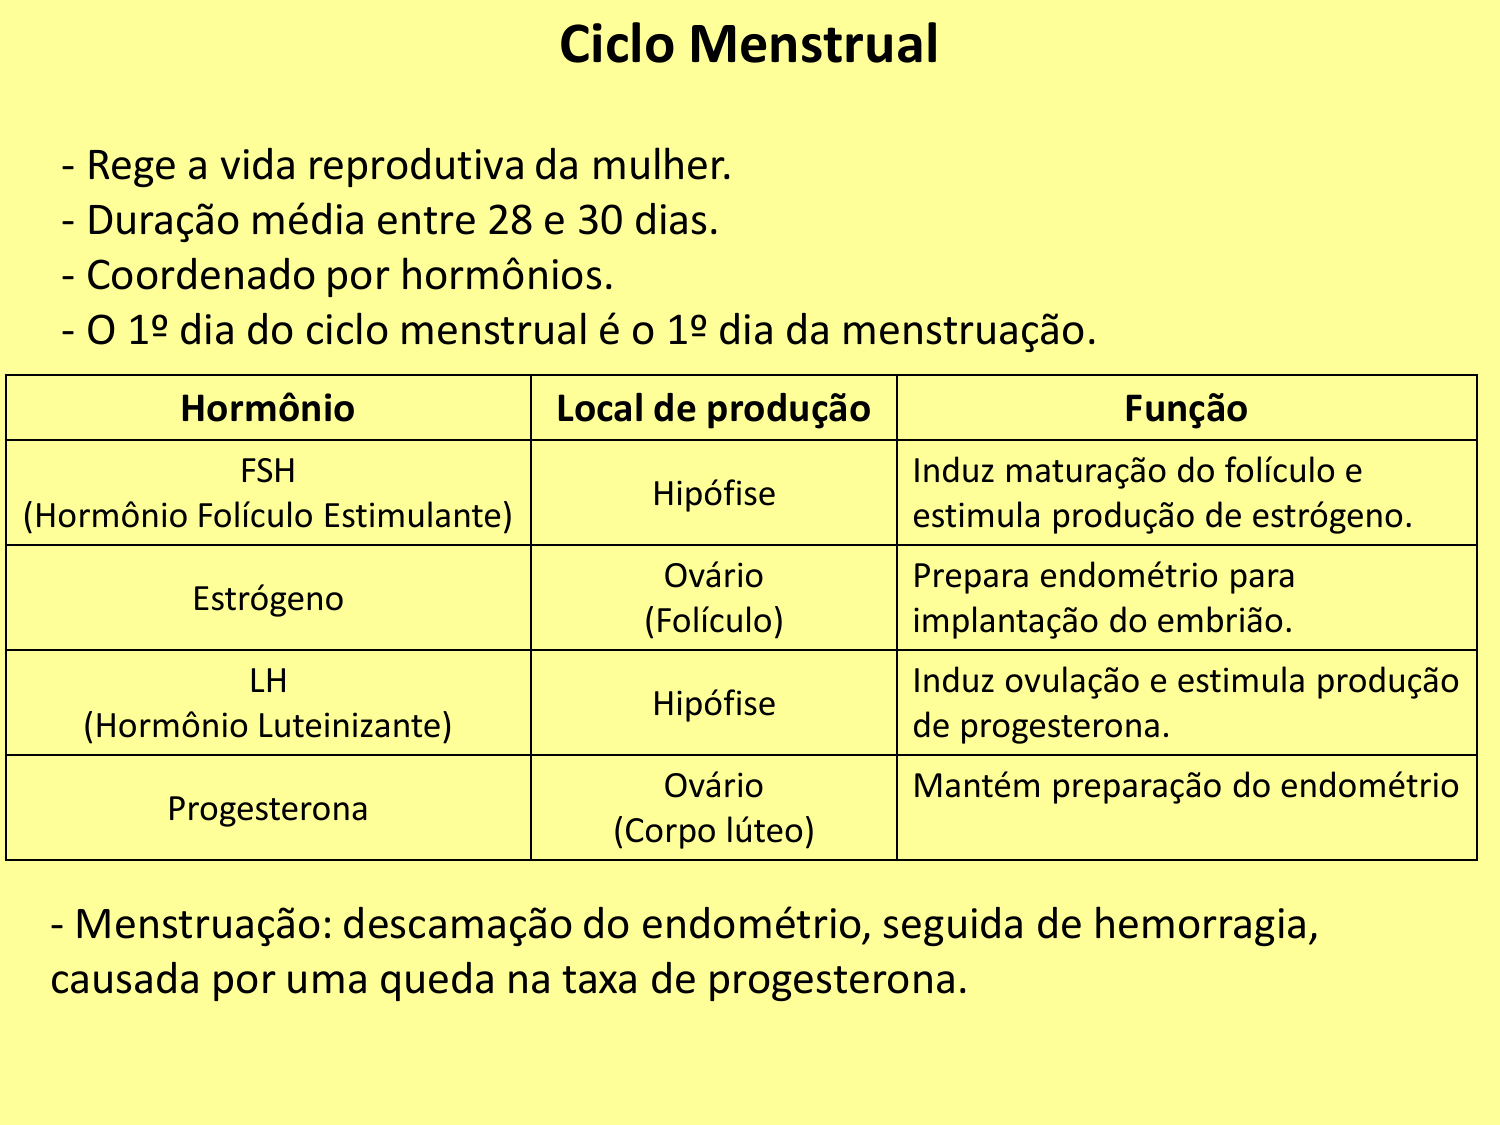 Ciclo menstrual dia a dia